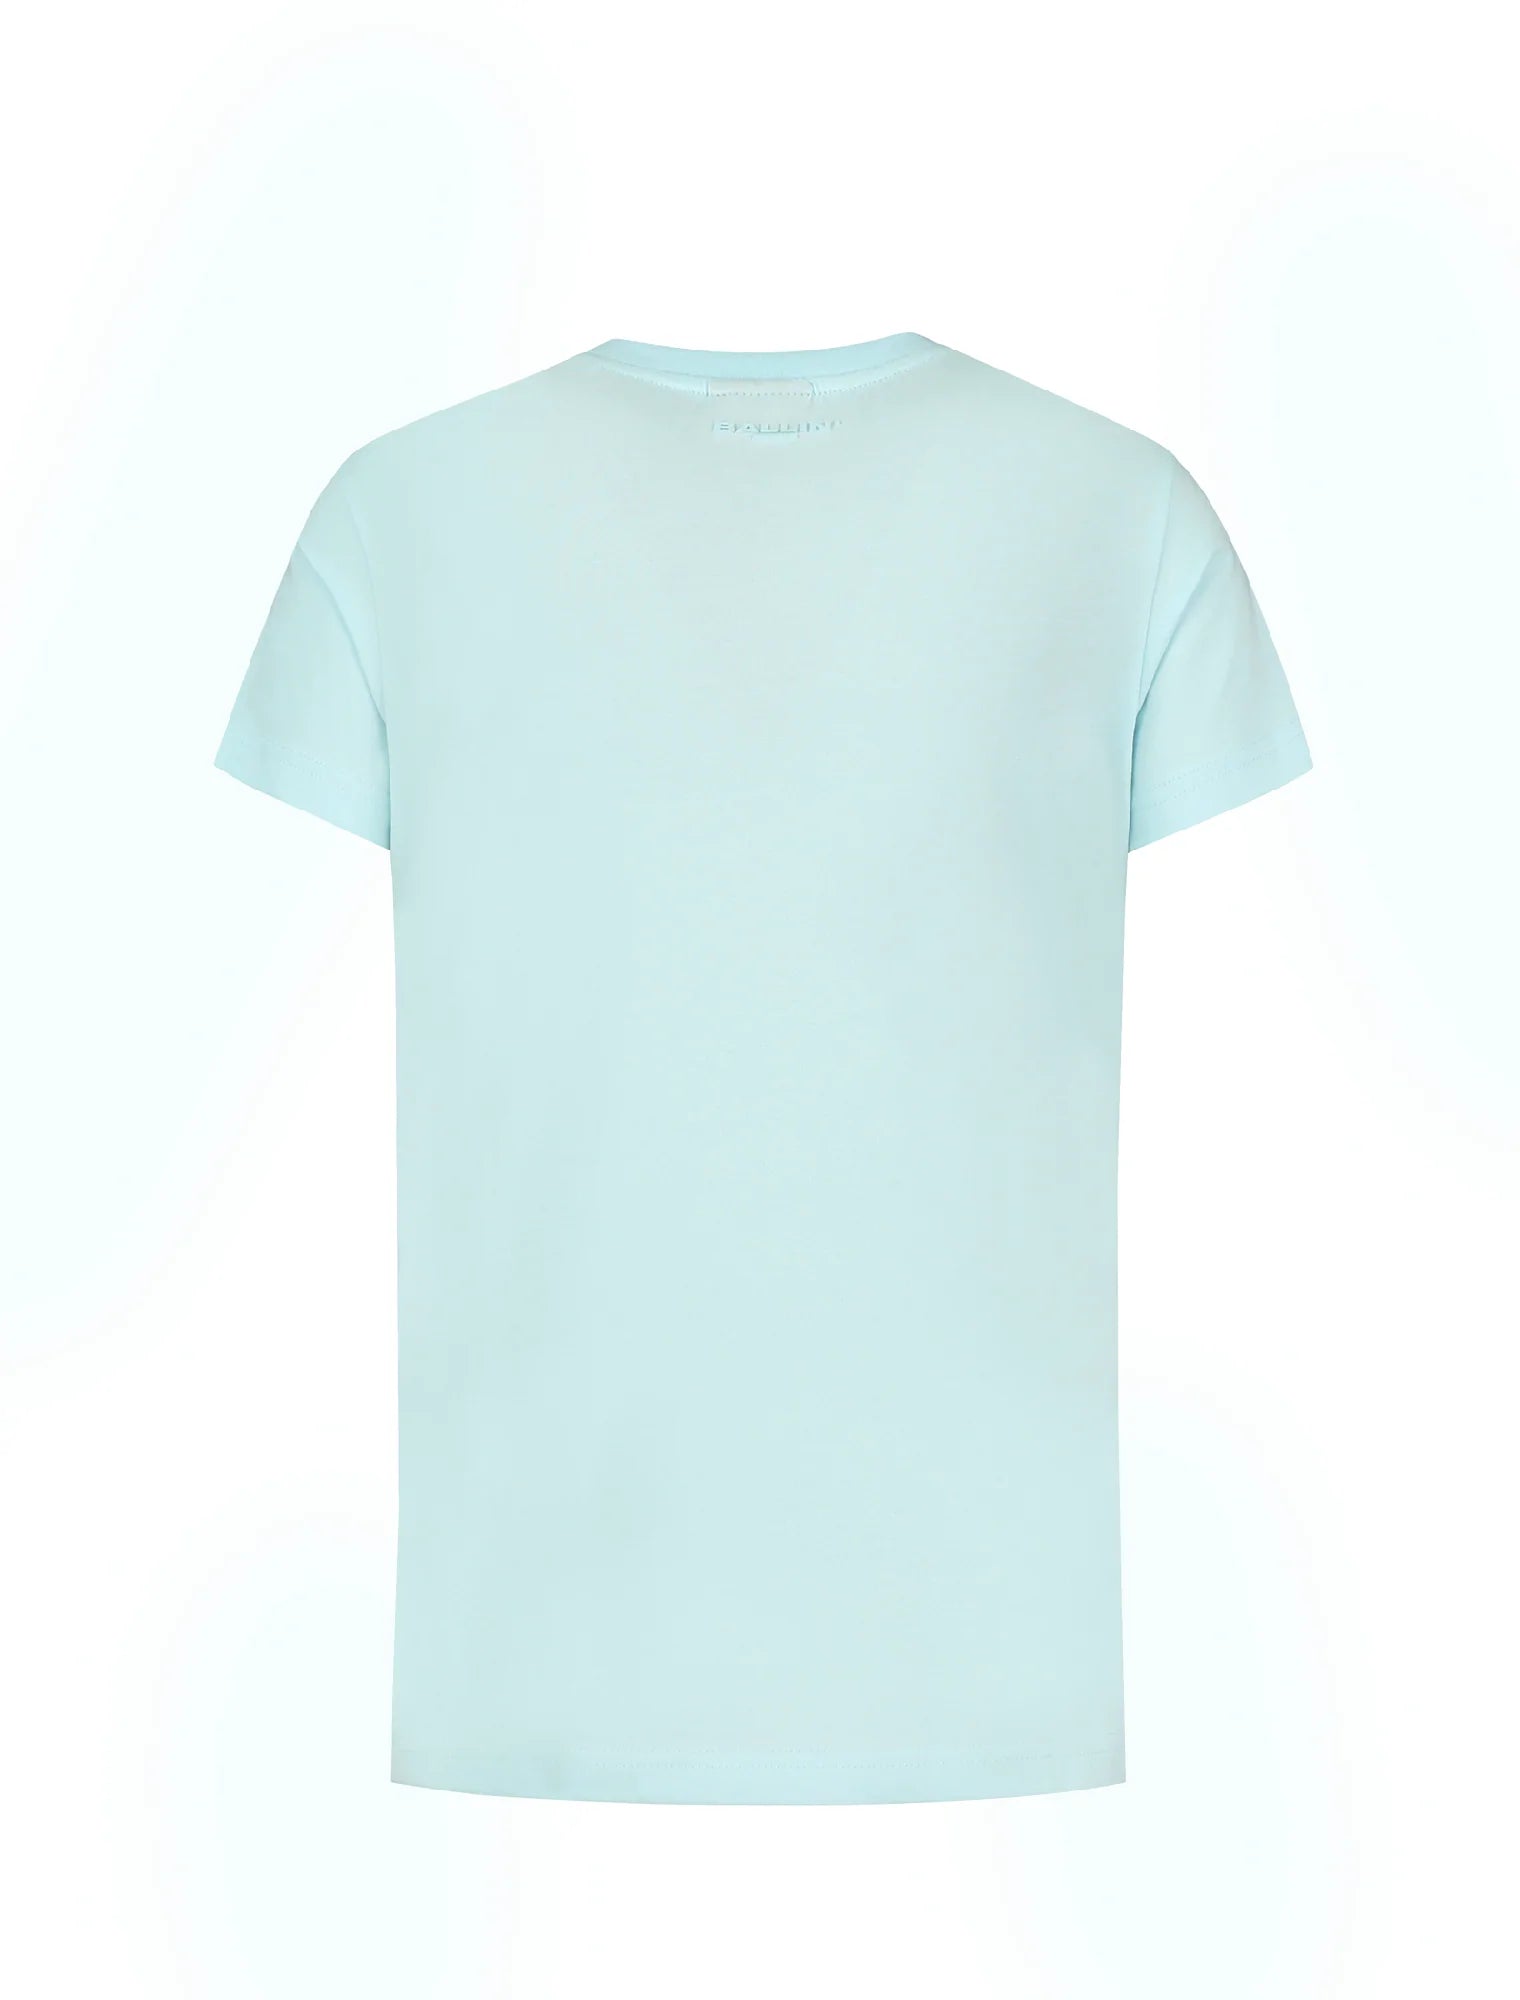 Unisexs T-shirt van Ballin Amsterdam in de kleur Light Blue in maat 176.